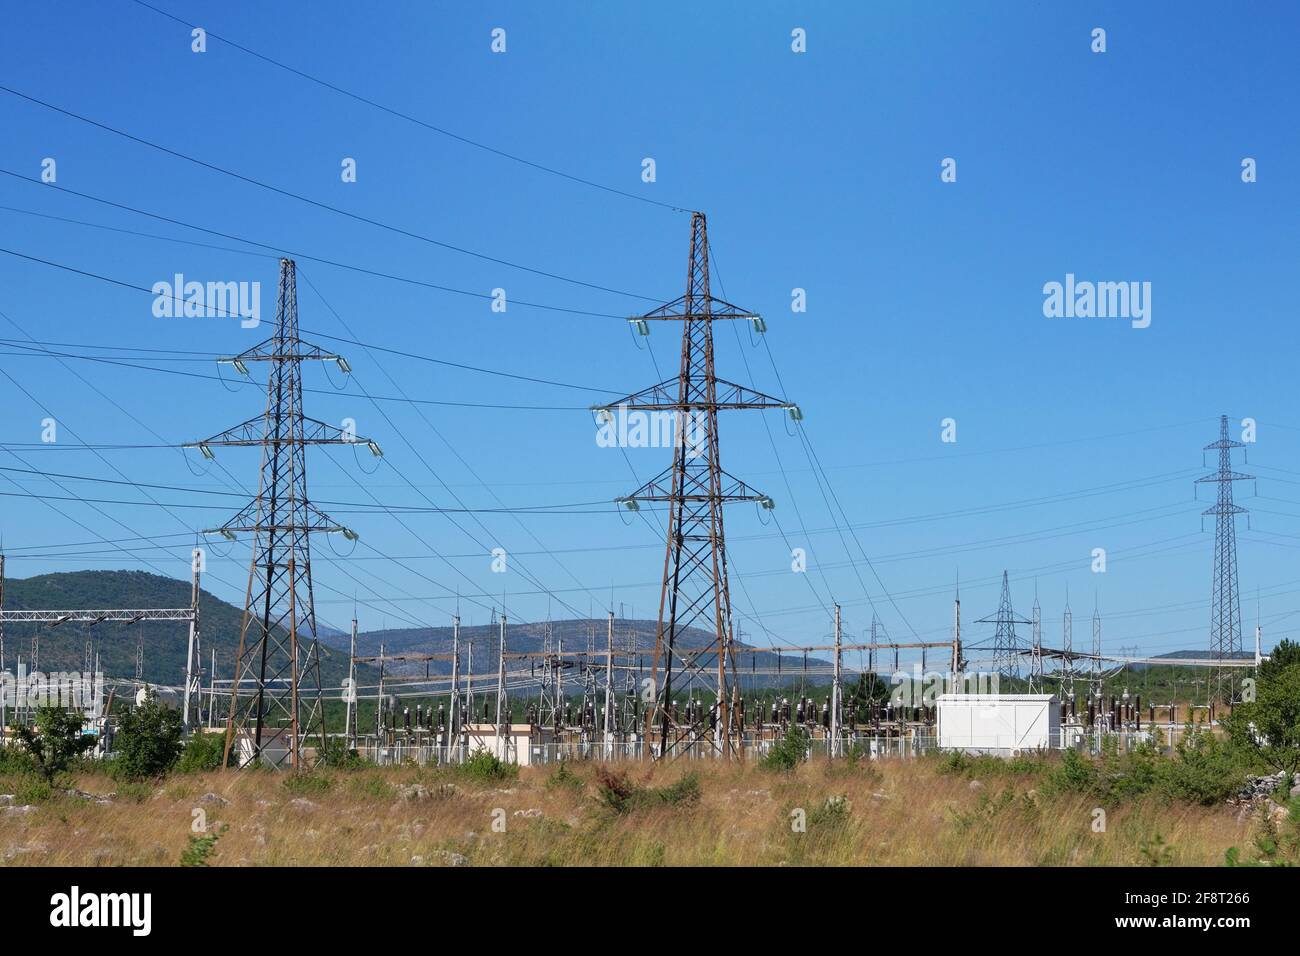 Centrale électrique. Poteaux électriques haute tension en montagne. Pylônes de transmission d'électricité. Banque D'Images